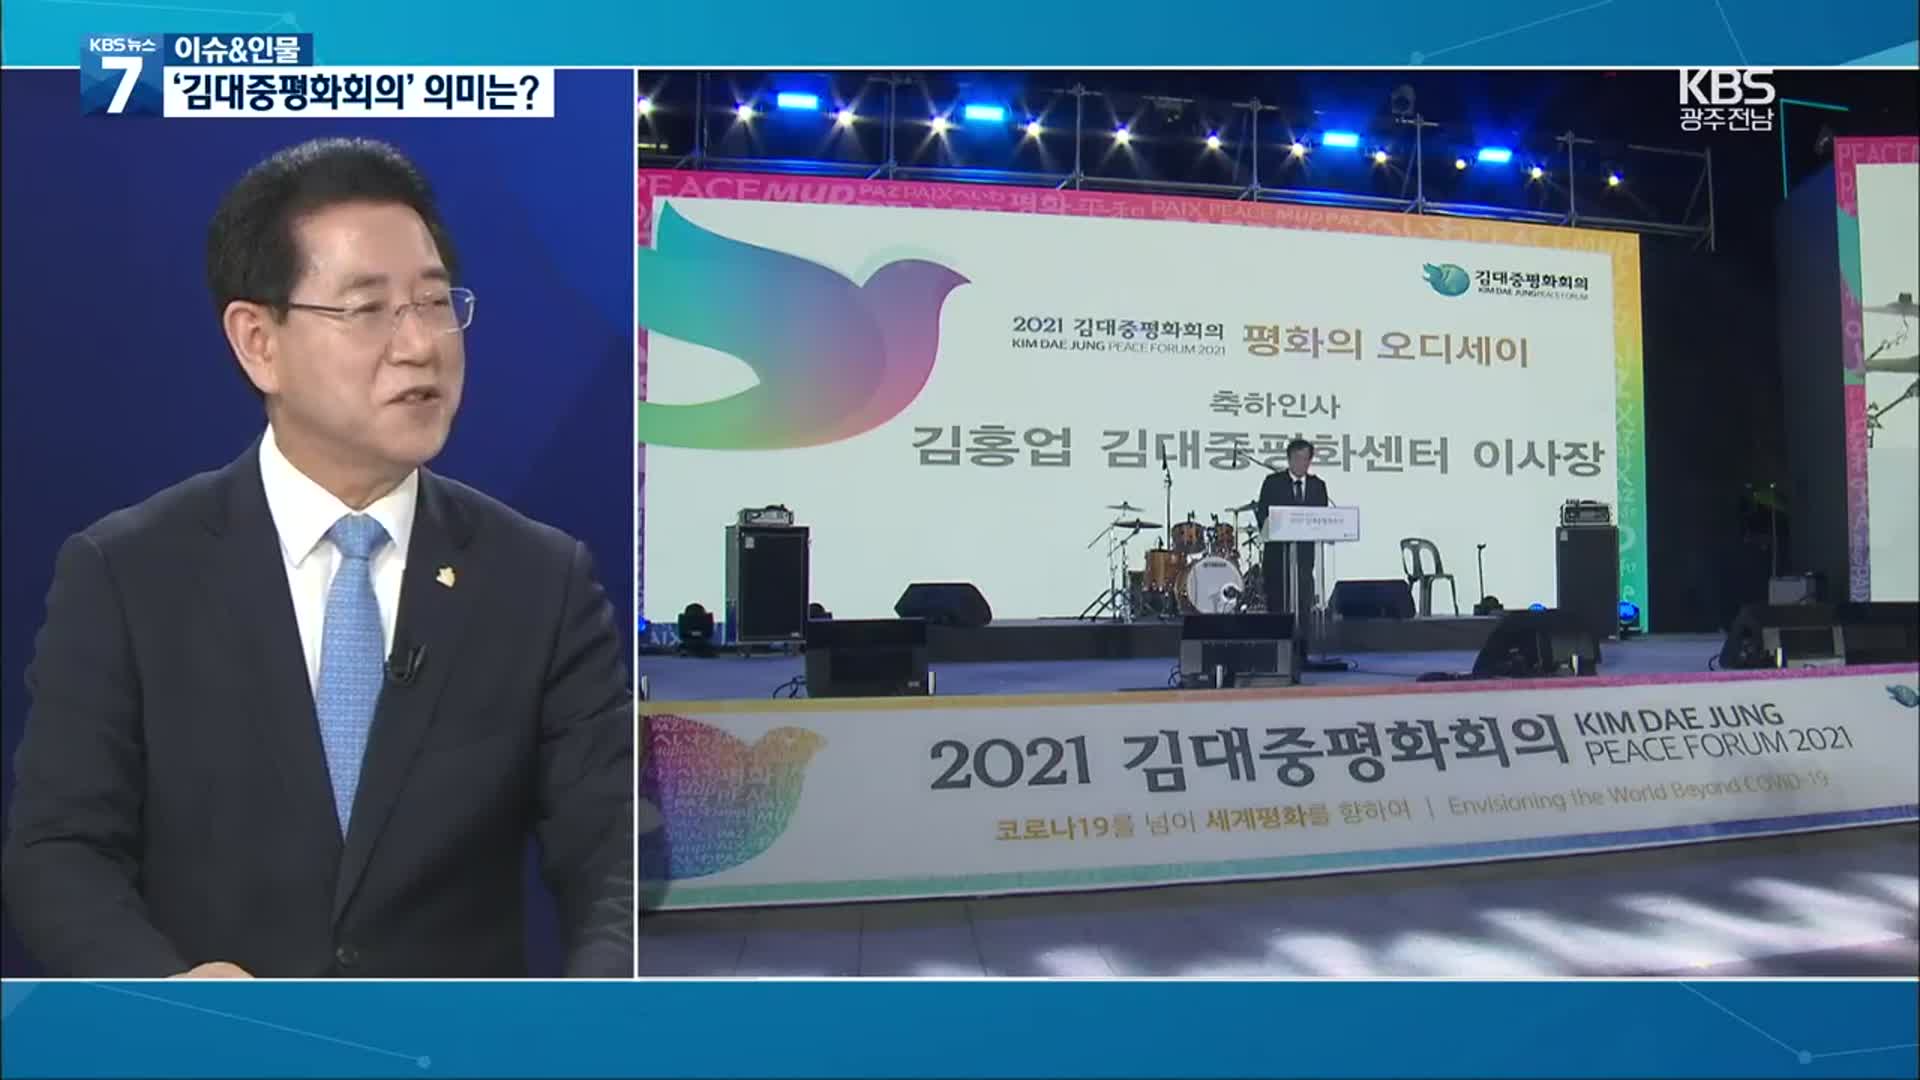 [이슈&인물] 김영록 지사에게 듣는 ‘김대중평화회의’ 개최 의미는?